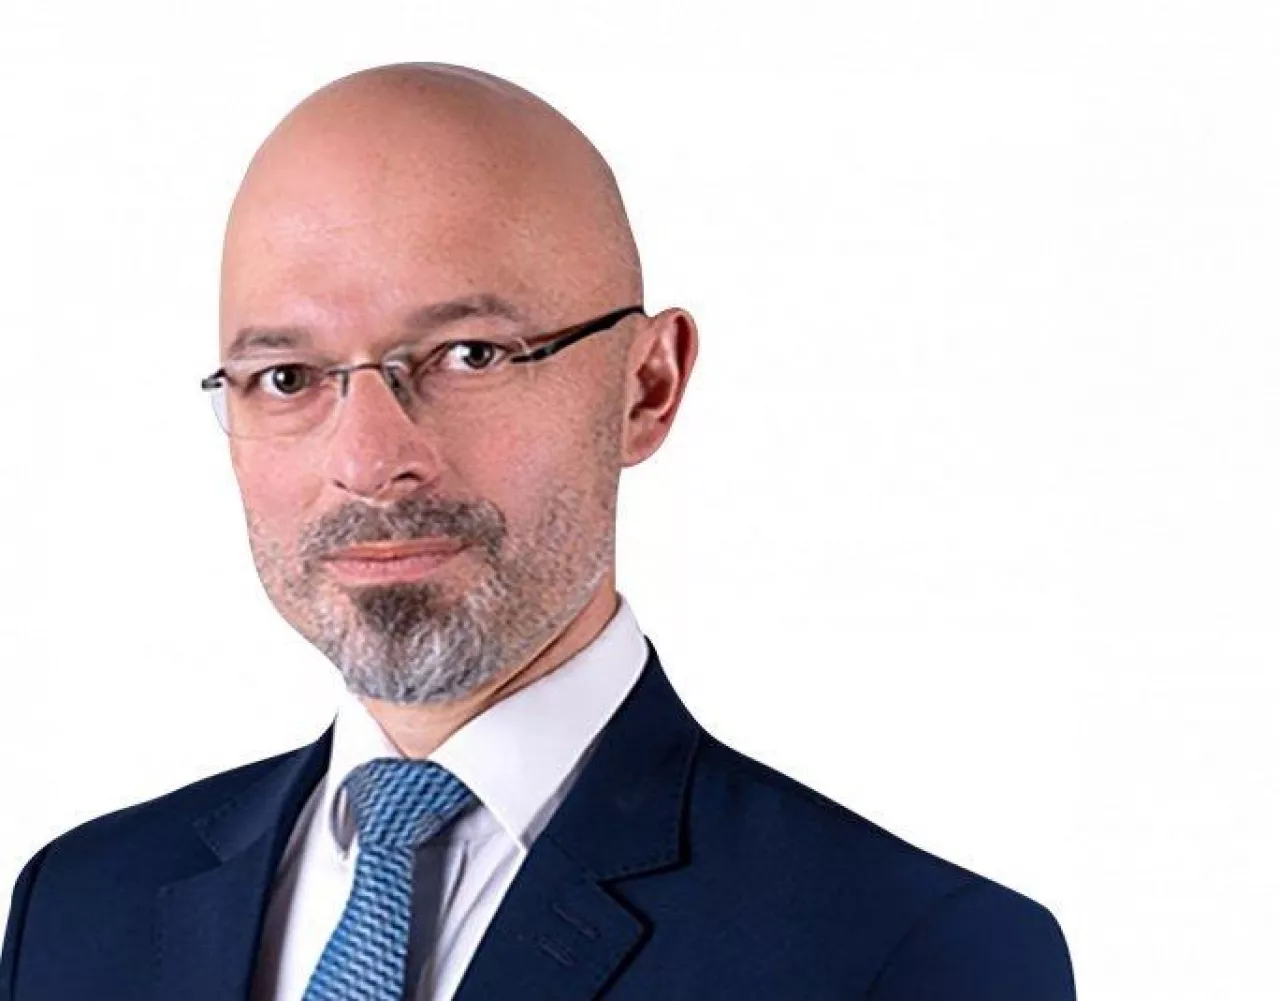 Michał Kurtyka, 15 listopada 2019 r. powołany na urząd ministra w nowoutworzonym Ministerstwie Klimatu (Źródło: KPRM)